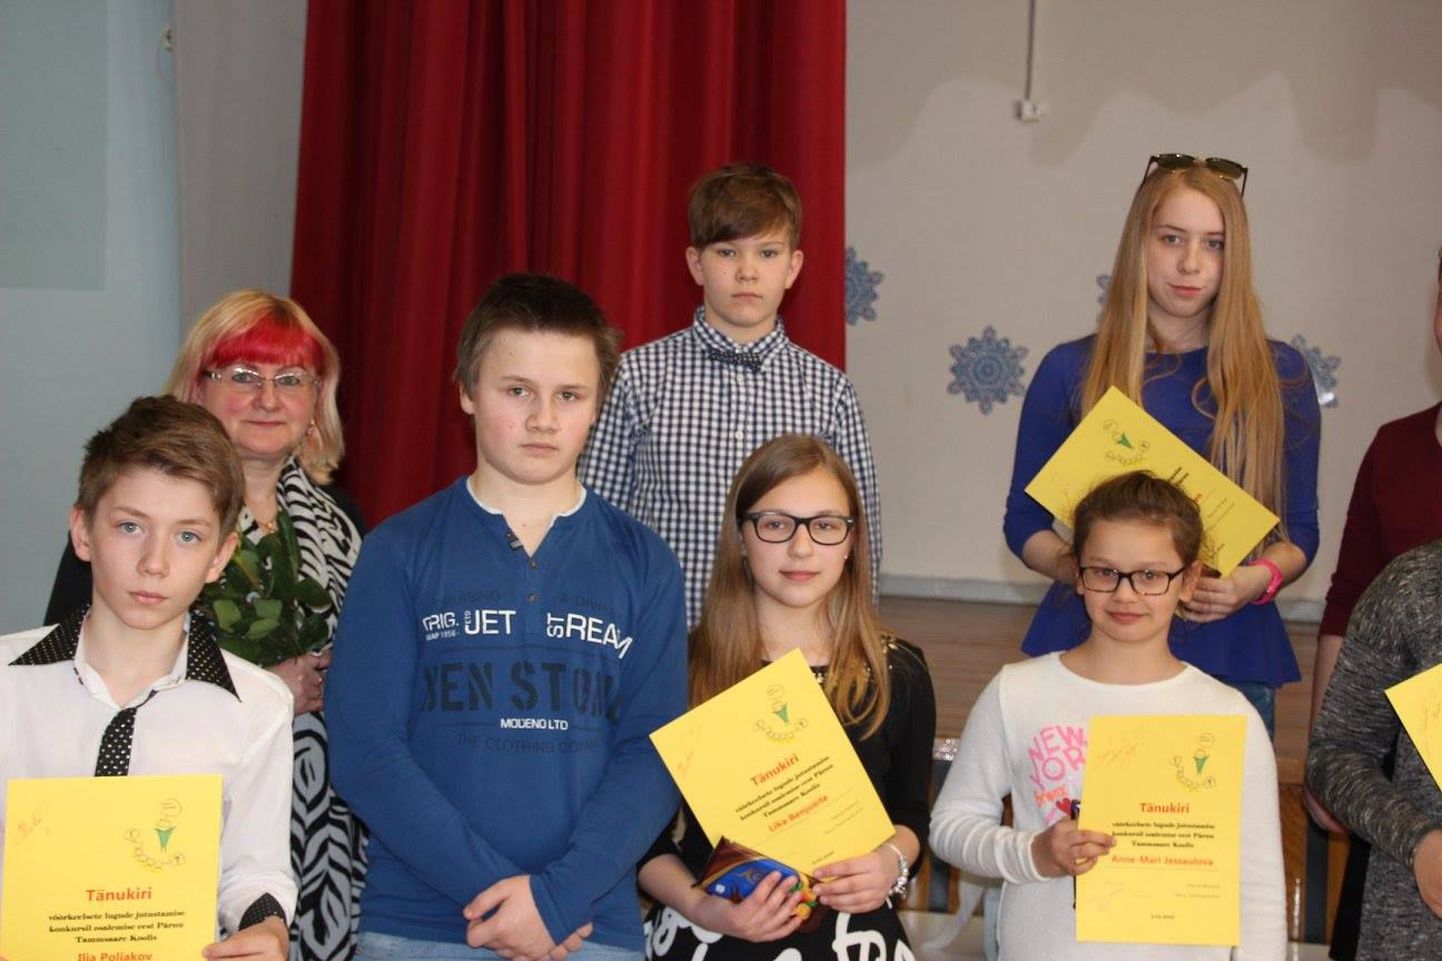 Võõrkeelsete lugude jutustamise konkursil „Kodul on ema nägu” esitasid kolme kooli õpilased enda valitud tekste inglise, vene ja eesti keeles.